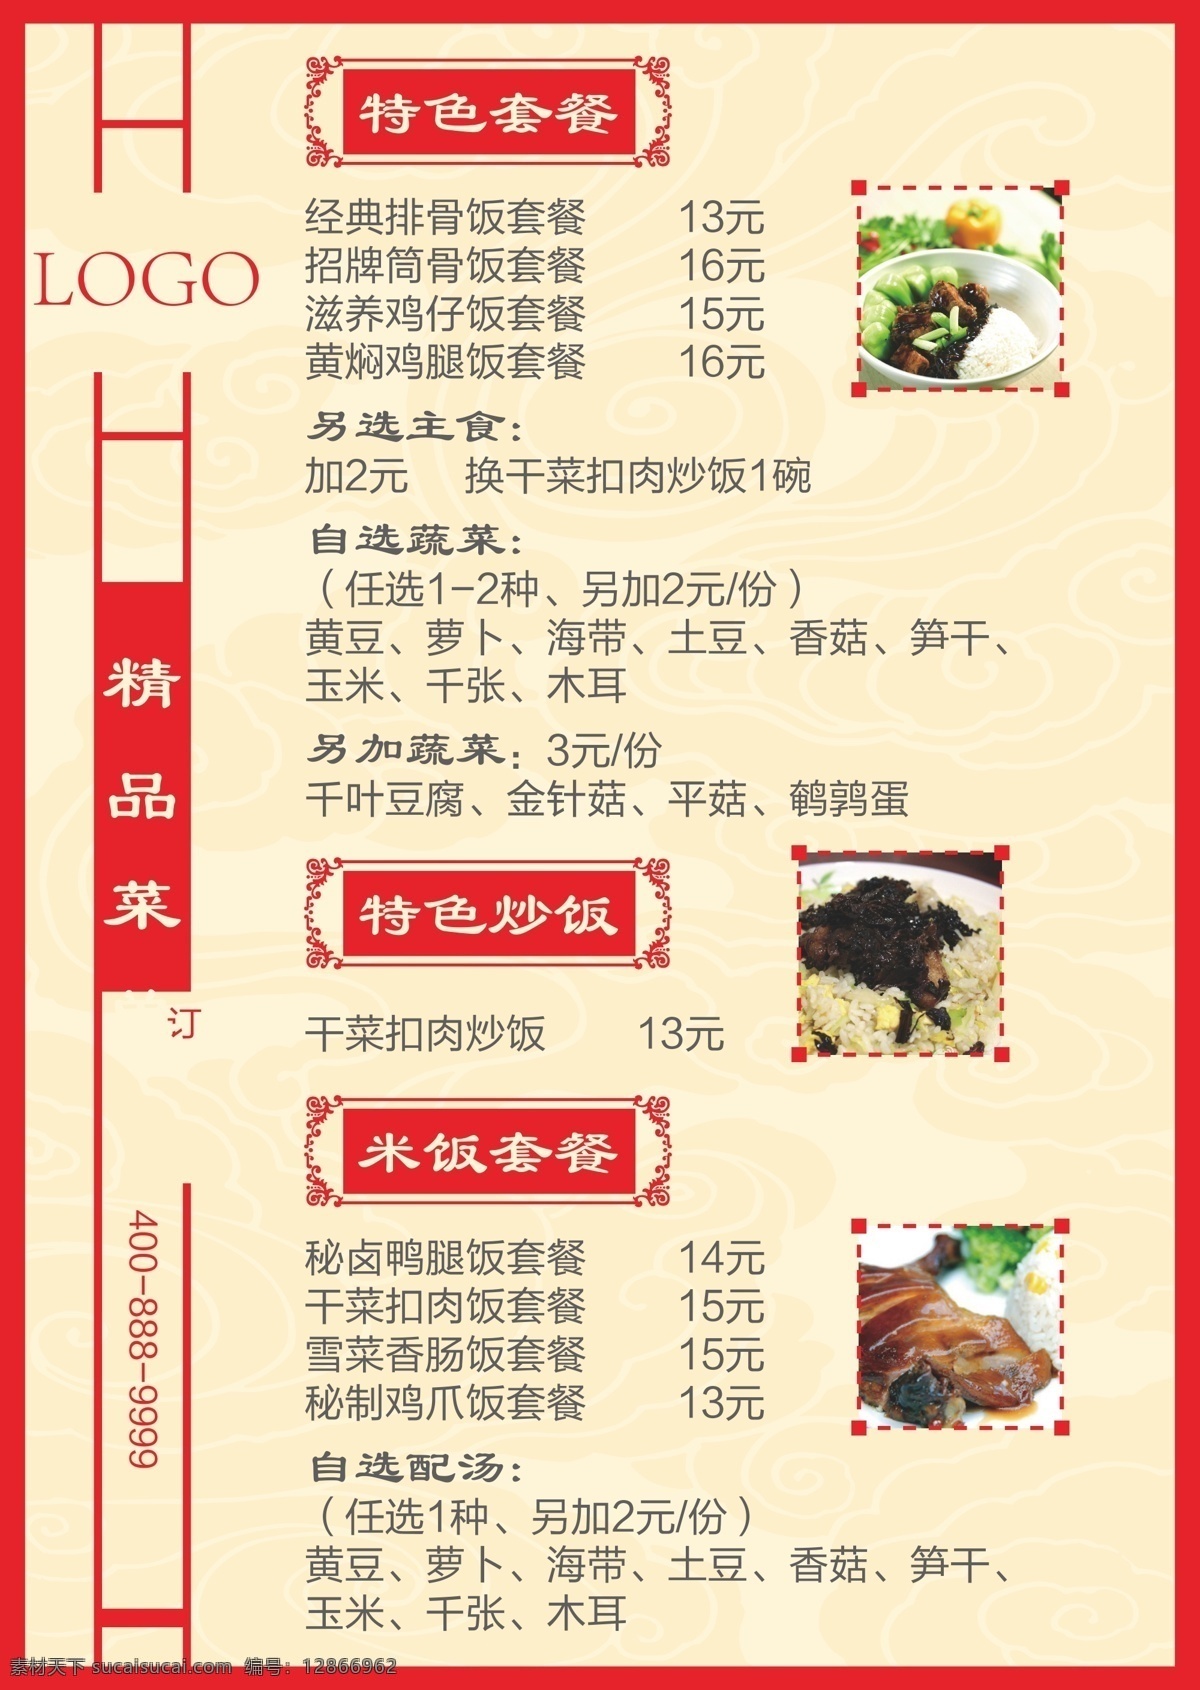 中餐厅 菜单 中式菜单 菜单矢量图 矢量图 黑色